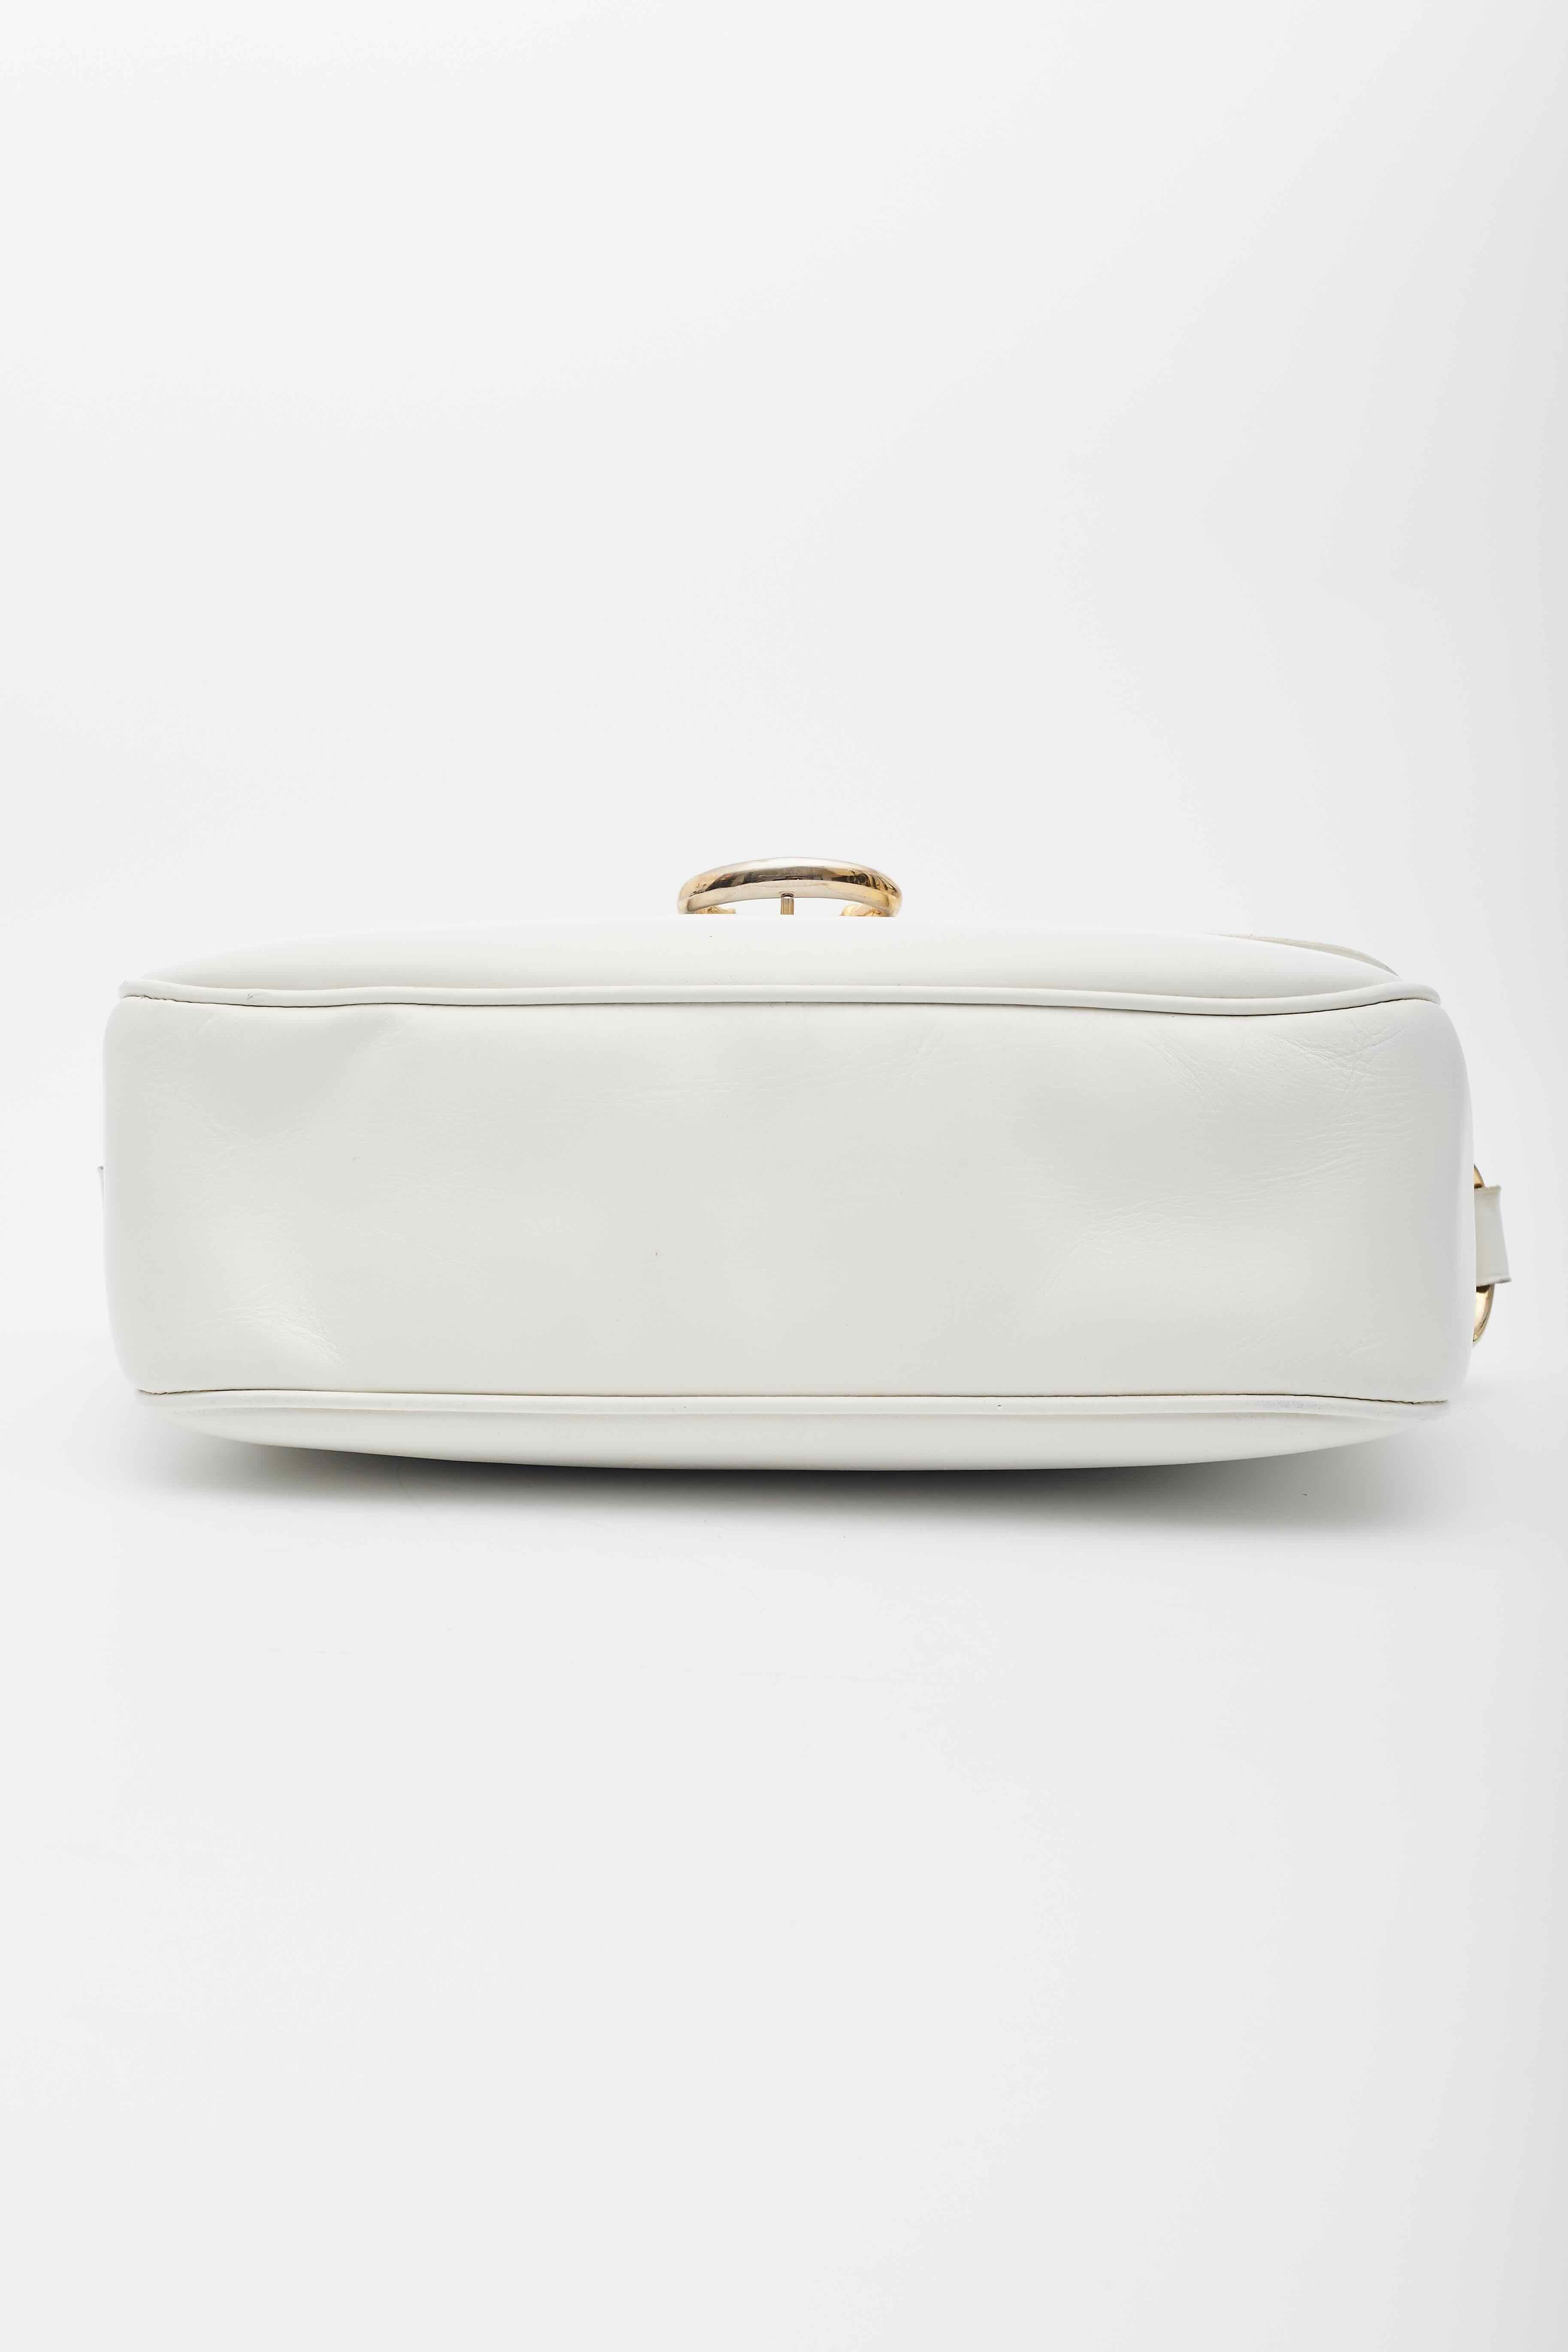 Celine Vintage White Leather Shoulder Bag For Sale 3